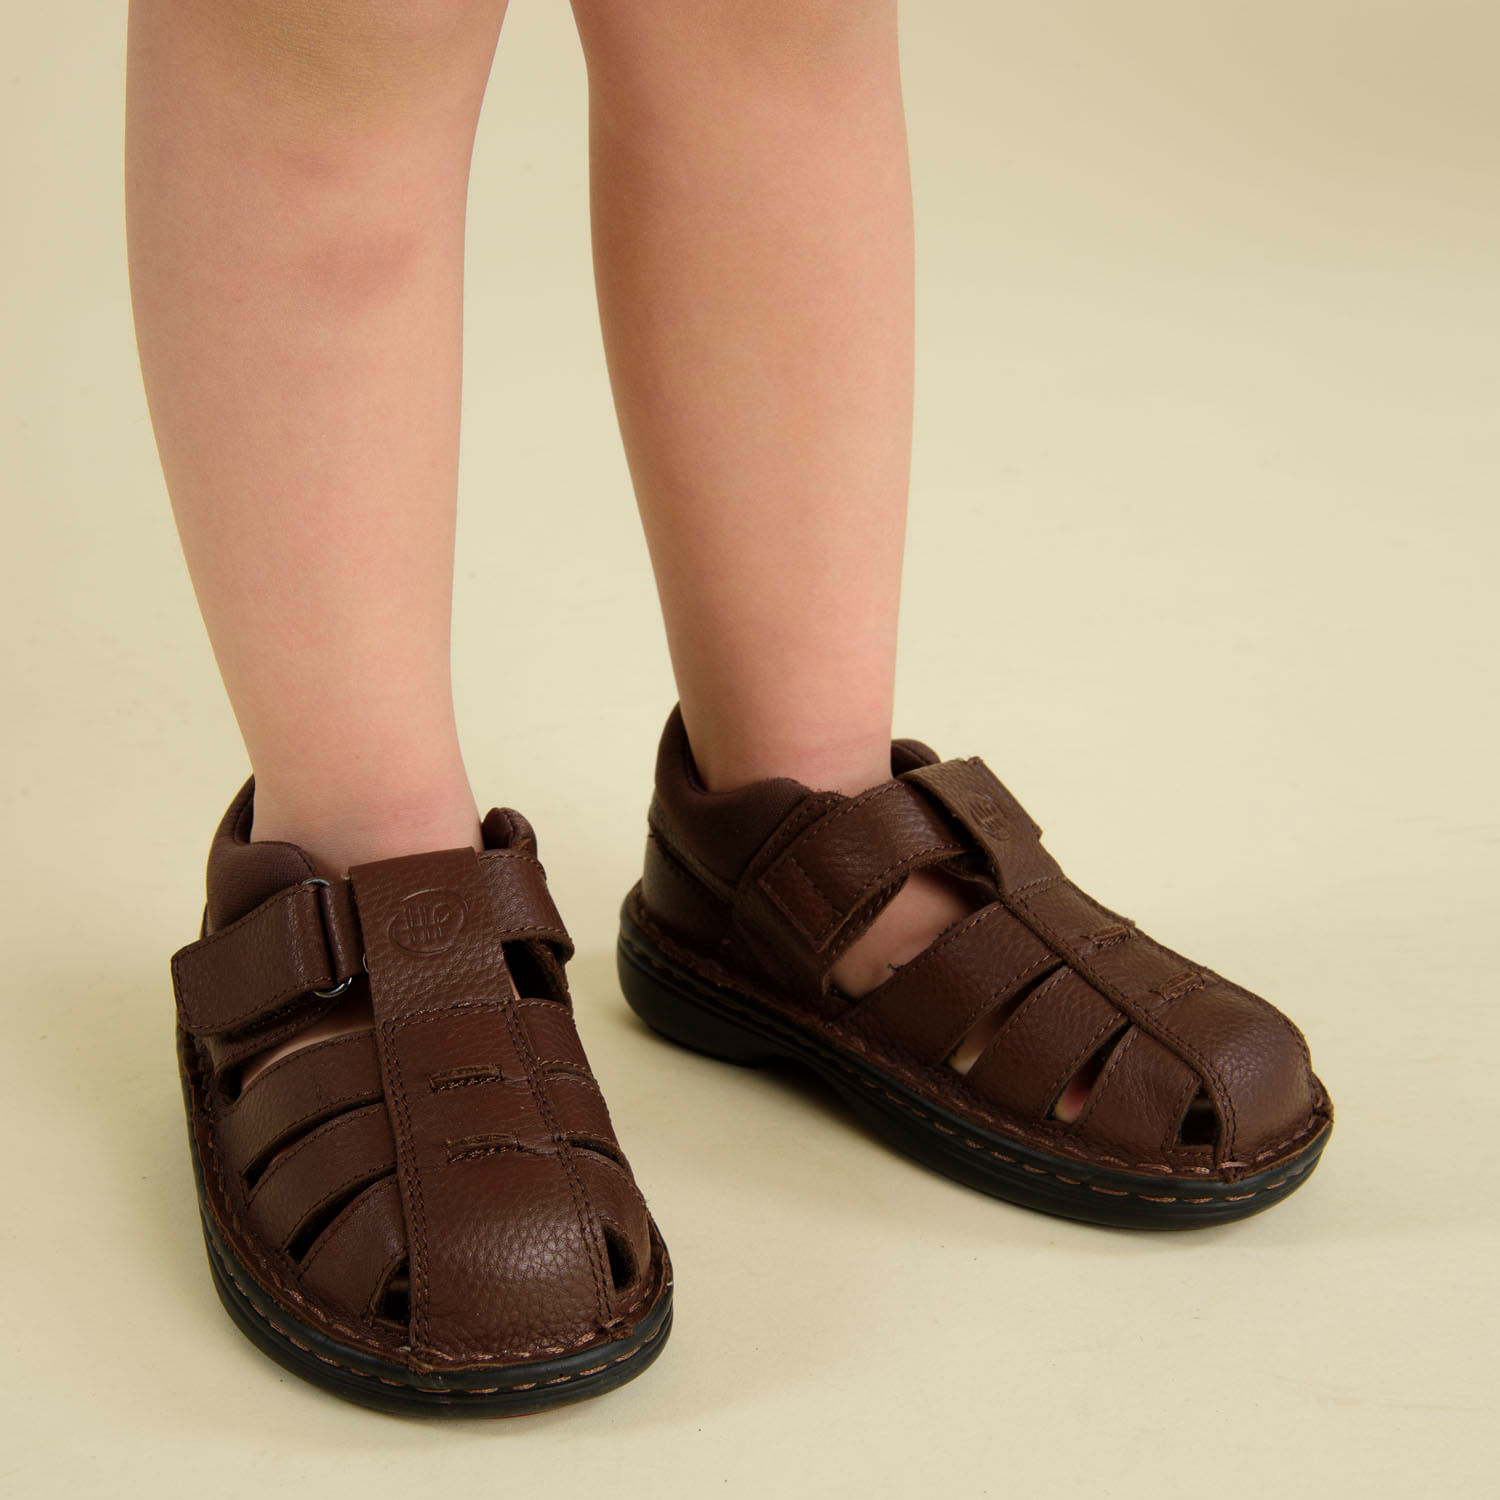 Sandalias – Compra Online en Zapatos.cl - Zapatos.cl Sitio Oficial - Encuentra Vestuario, Calzado y más